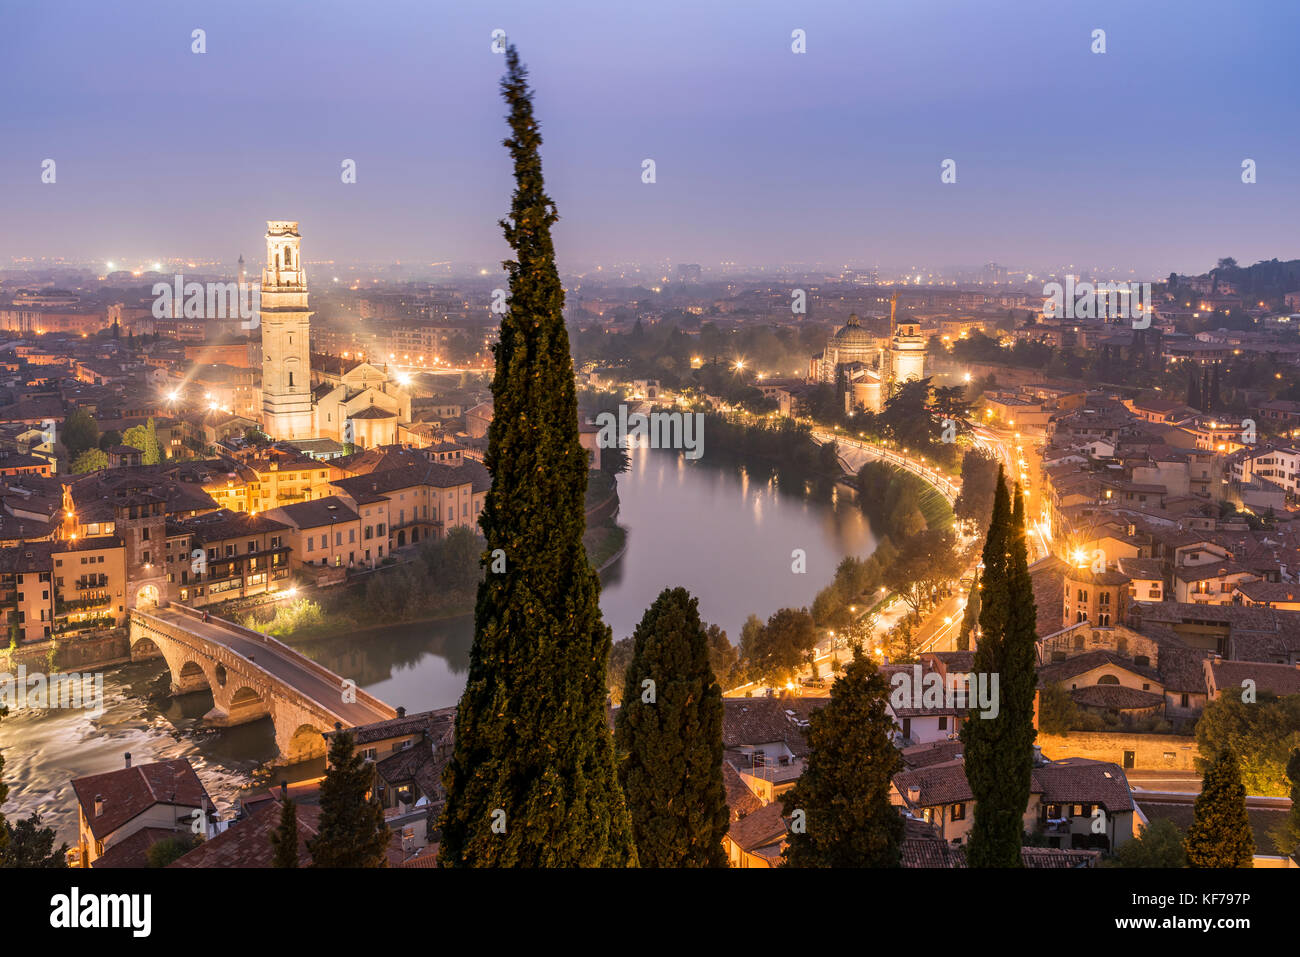 La notte dello skyline della città, Verona, Veneto, Italia Foto Stock